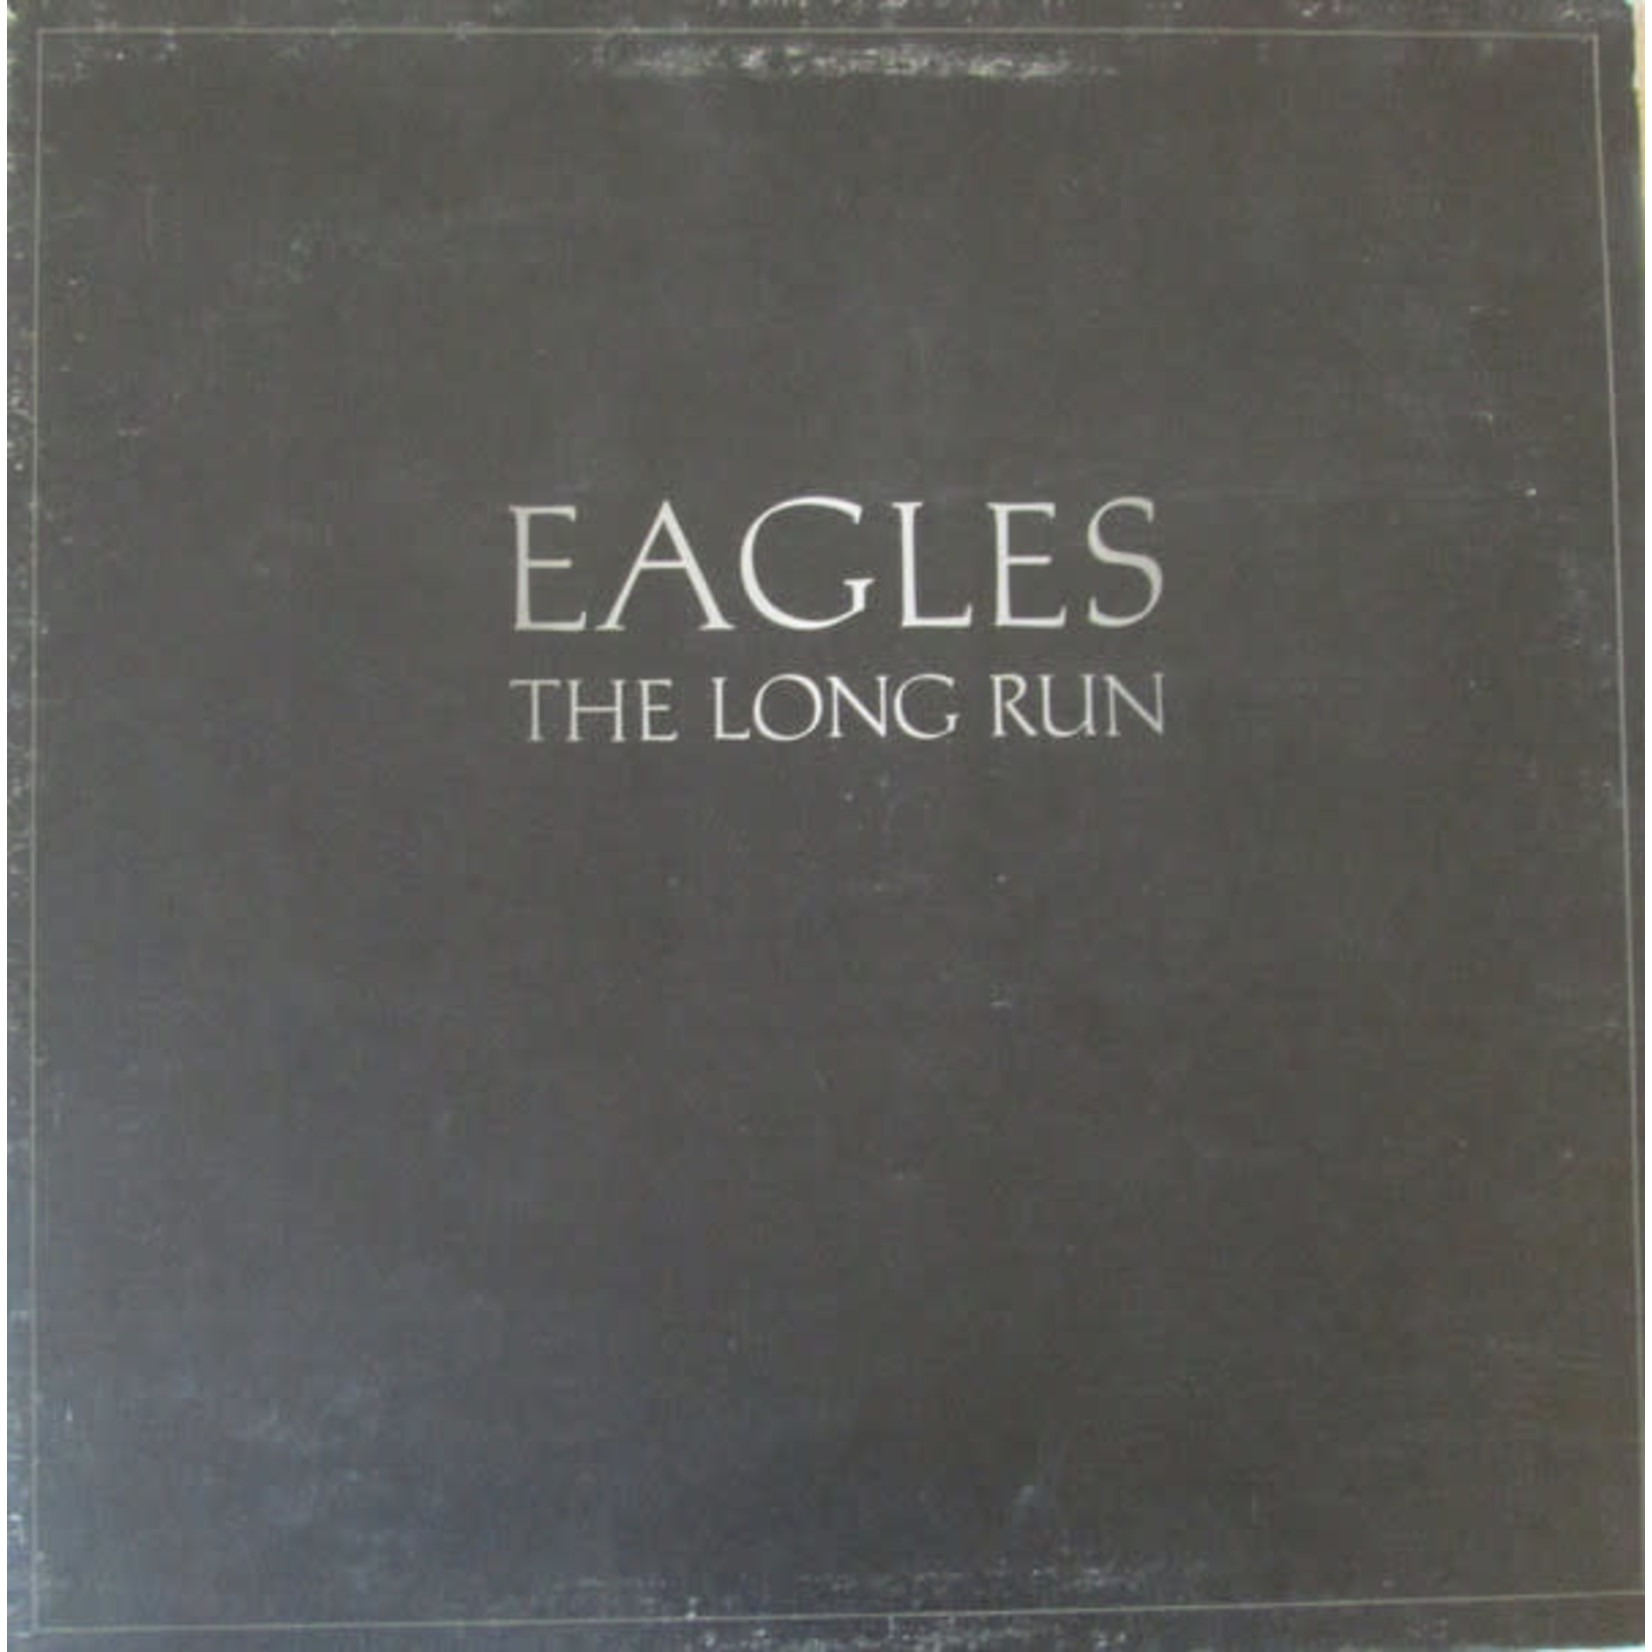 Eagles Eagles - The Long Run (VG, 1979, LP, Asylum Records – 5E 508) SCAZ